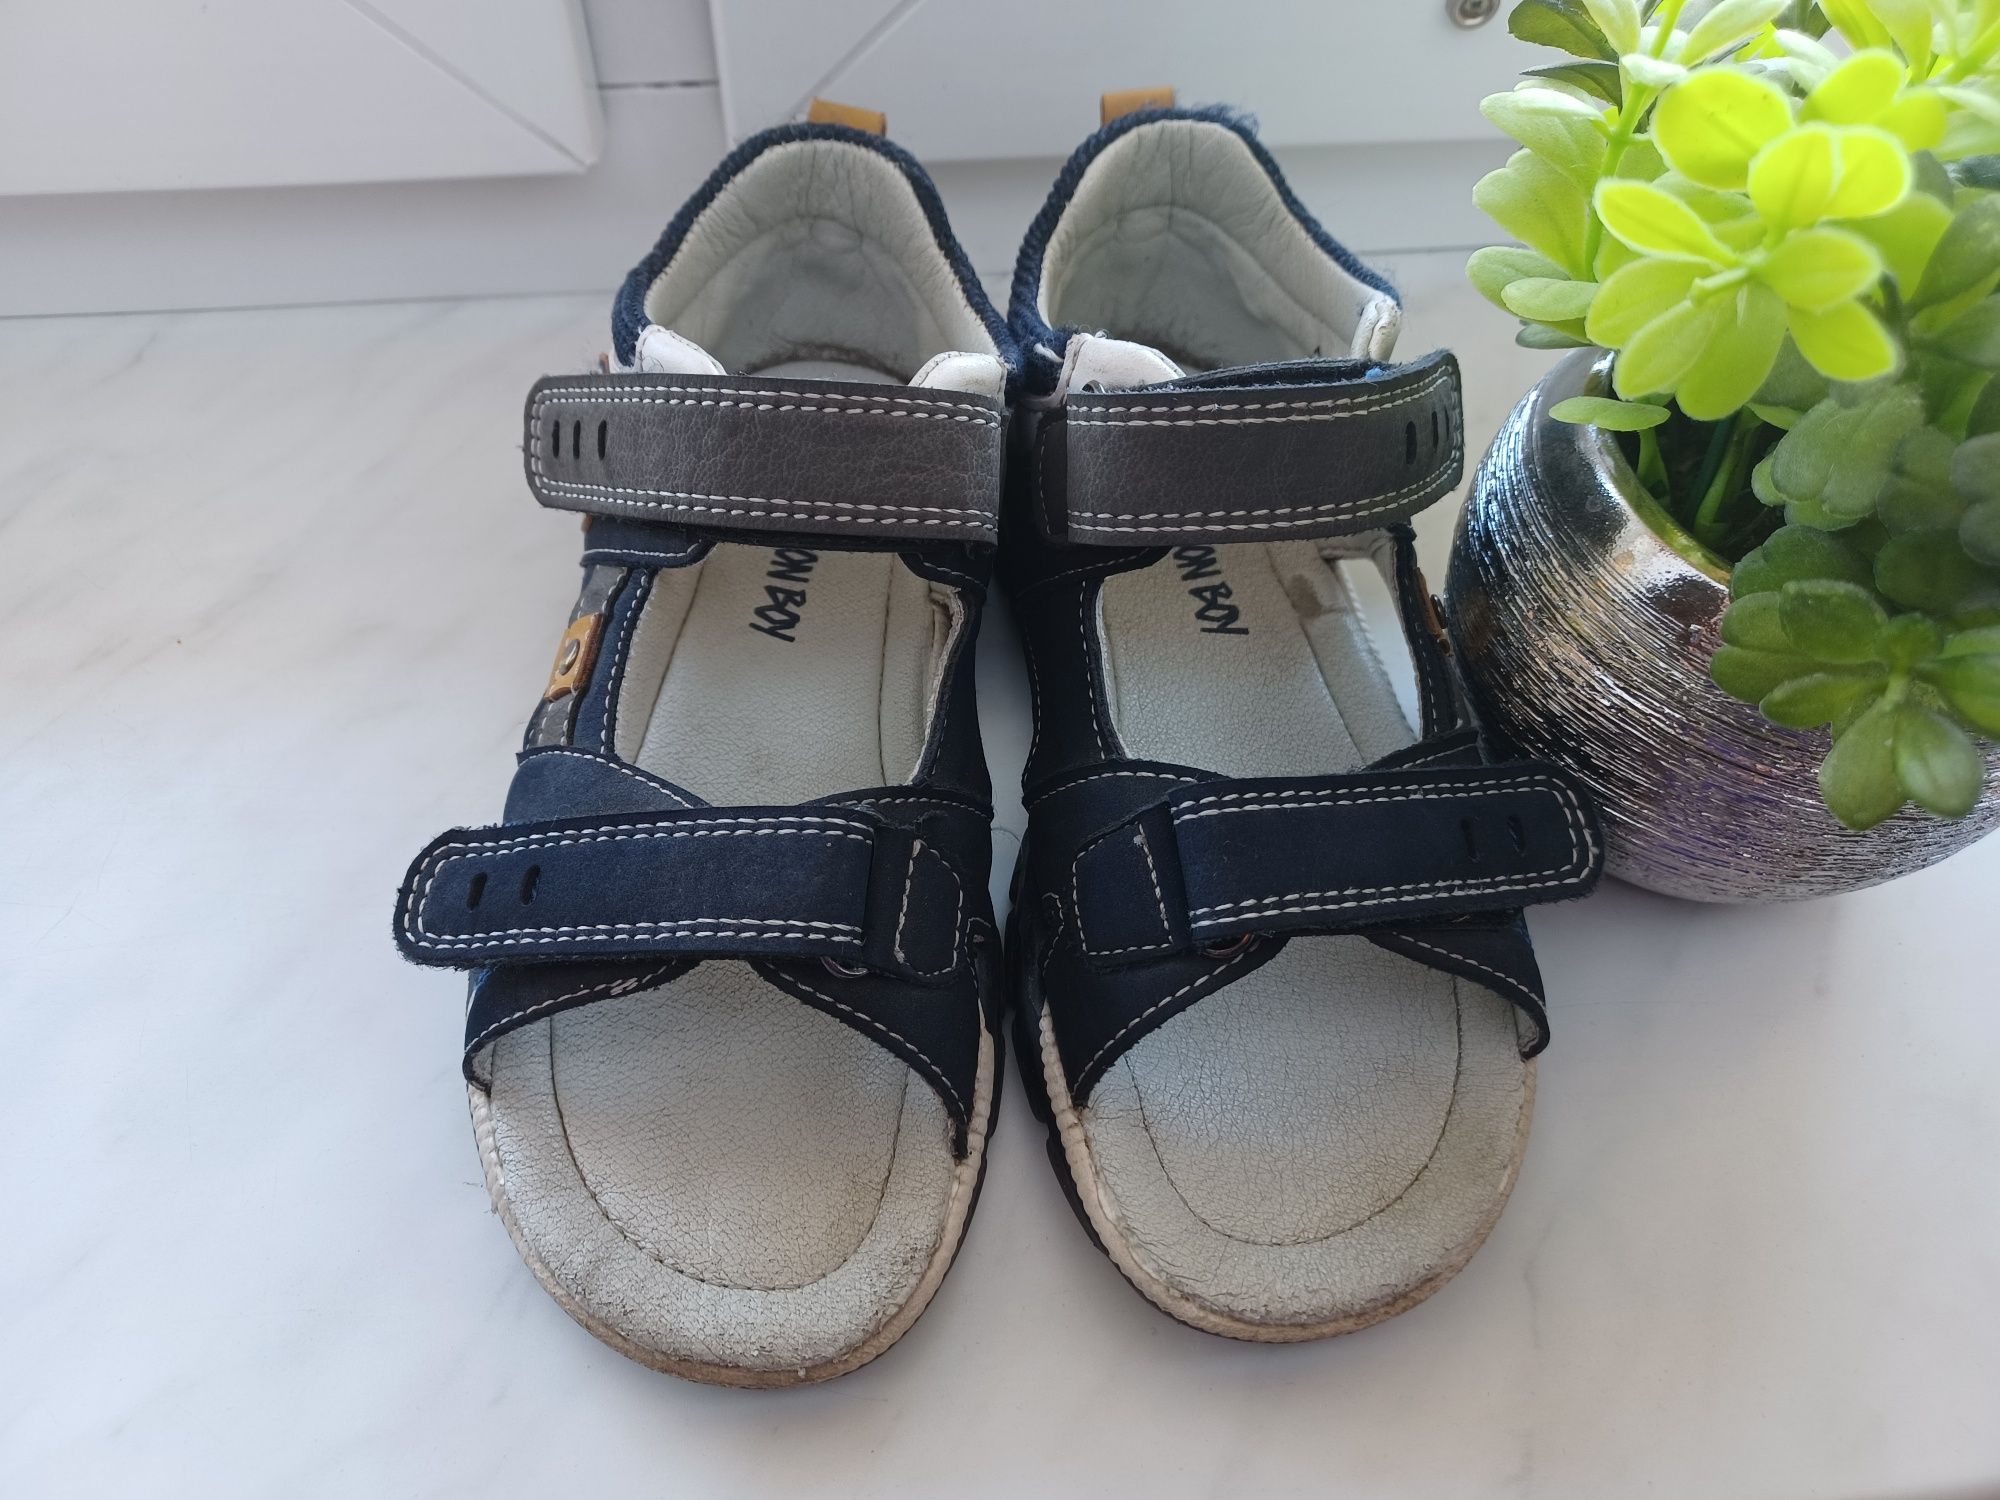 Sandały sandałki dla chłopca action boy ccc r. 29 wkl 19 cm Rostarzewo •  OLX.pl